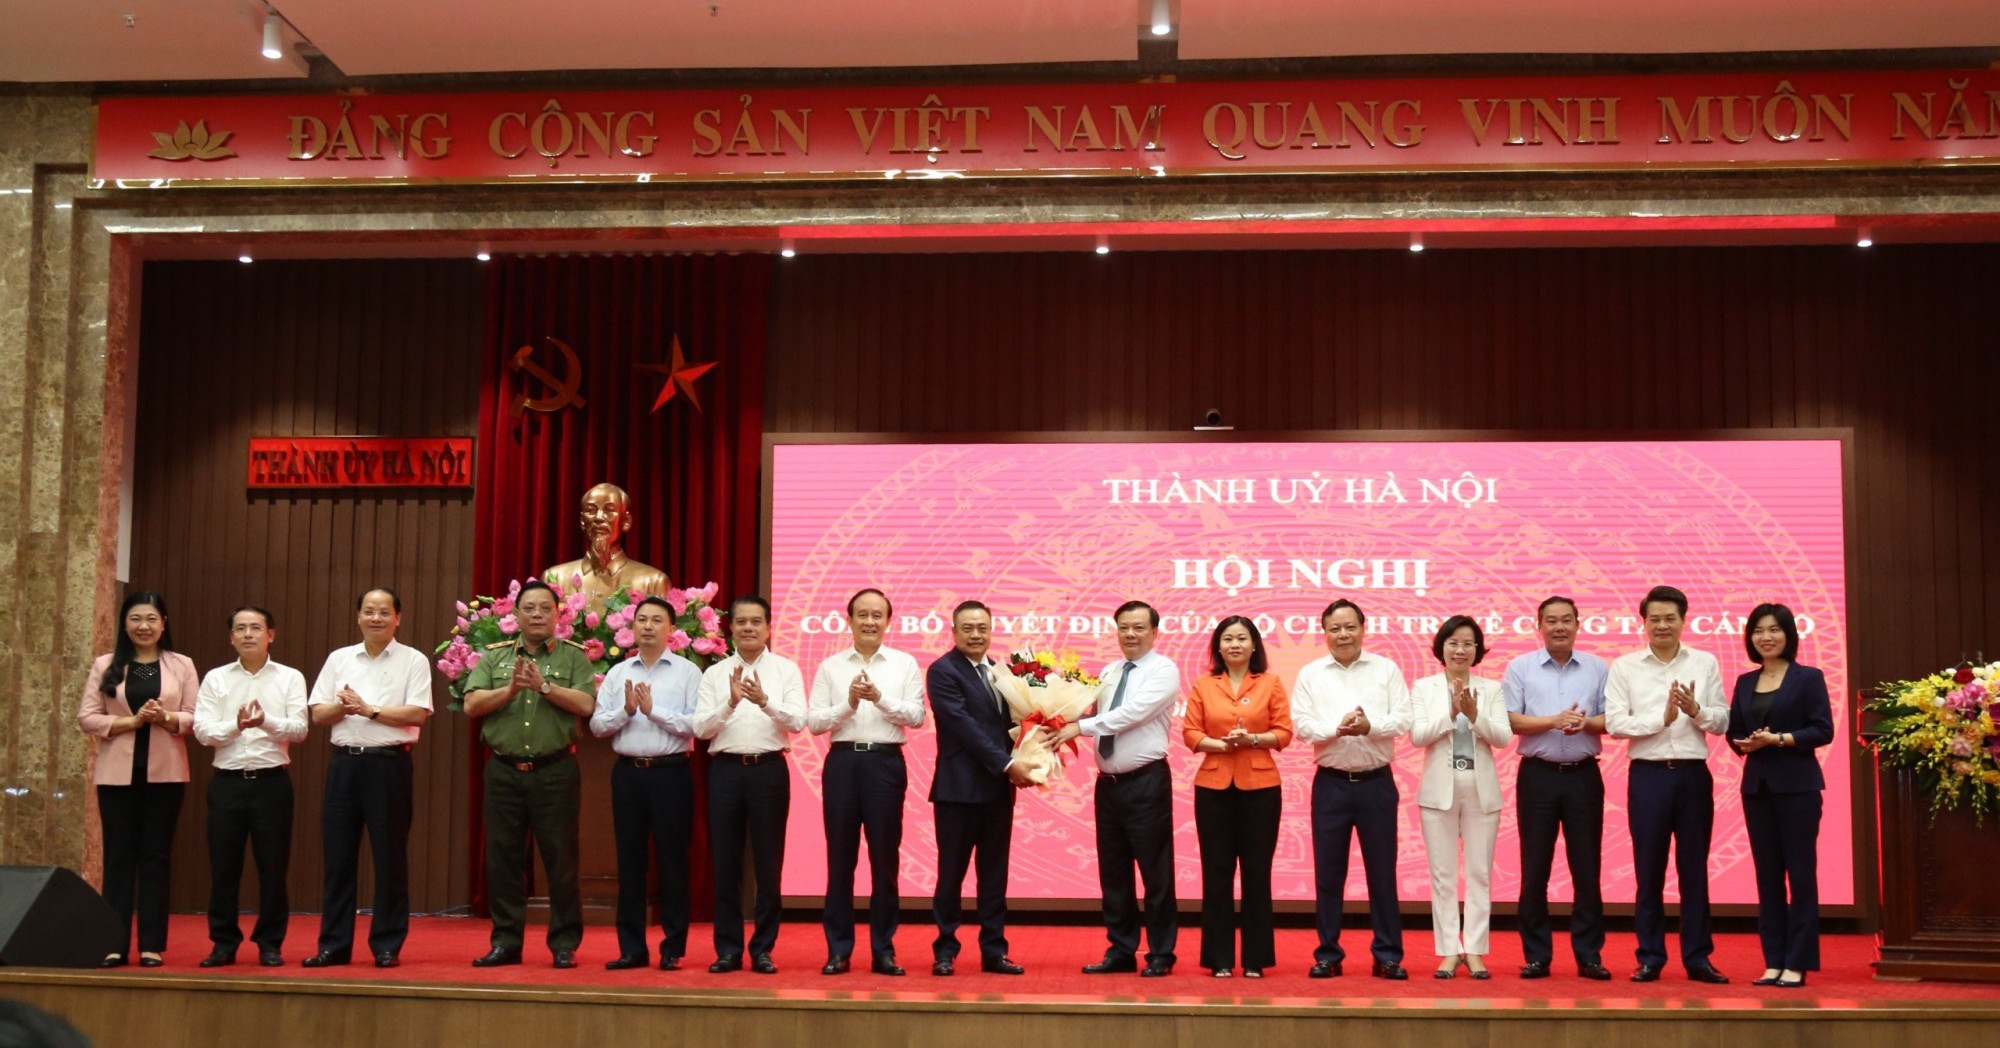 Ông Trần Sỹ Thanh vừa được điều động giữ chức vụ Phó Bí thư Thành uỷ Hà Nội.